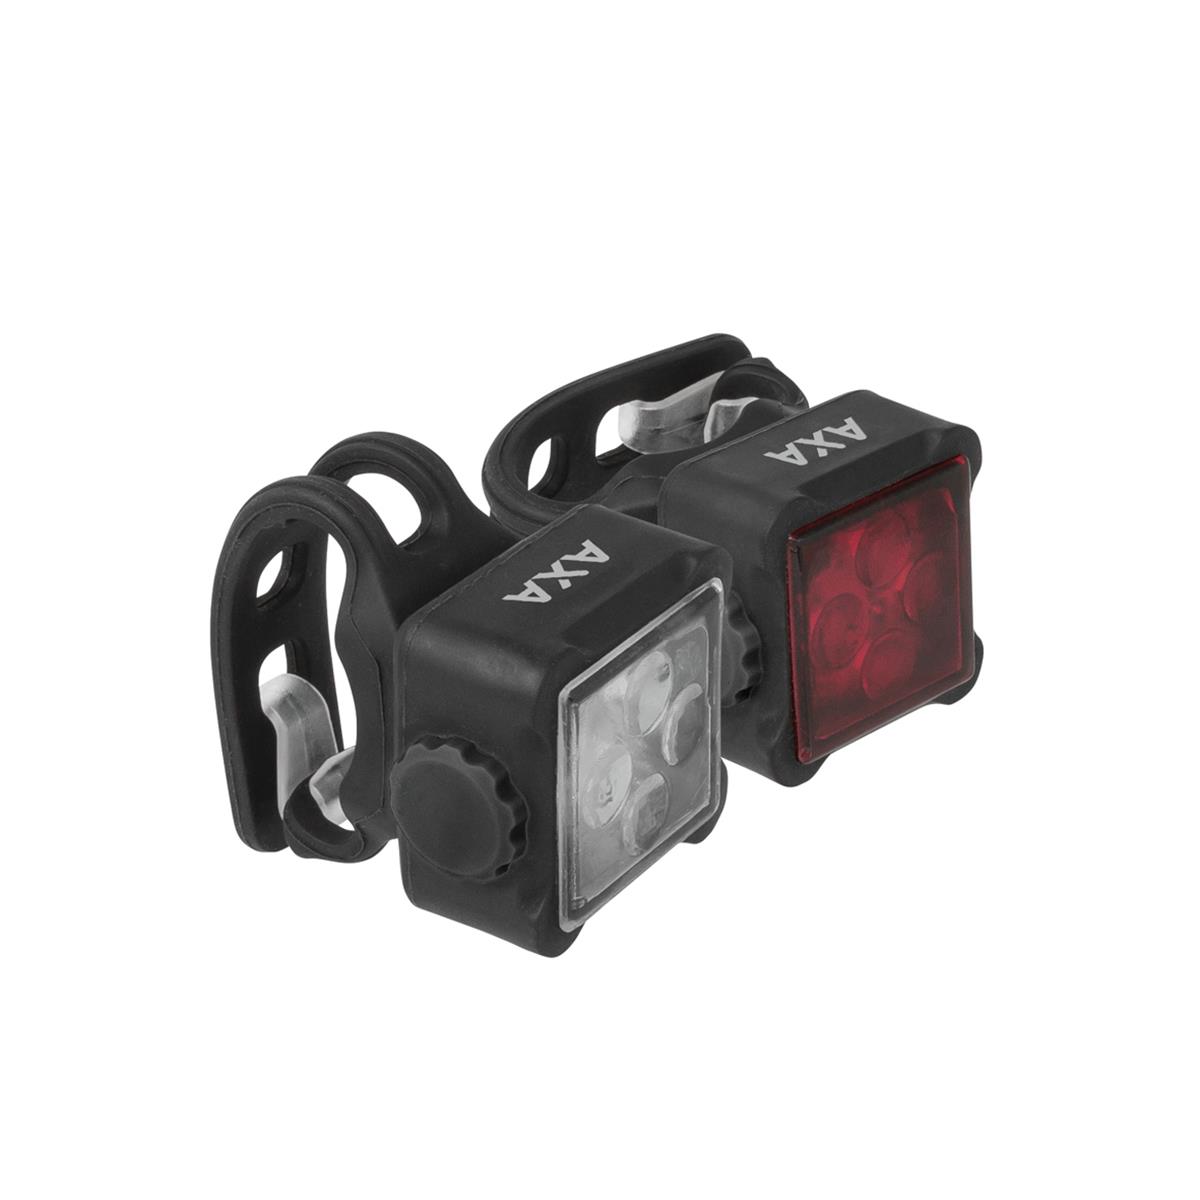 Kit Niteline 44-R luz delantera y trasera USB